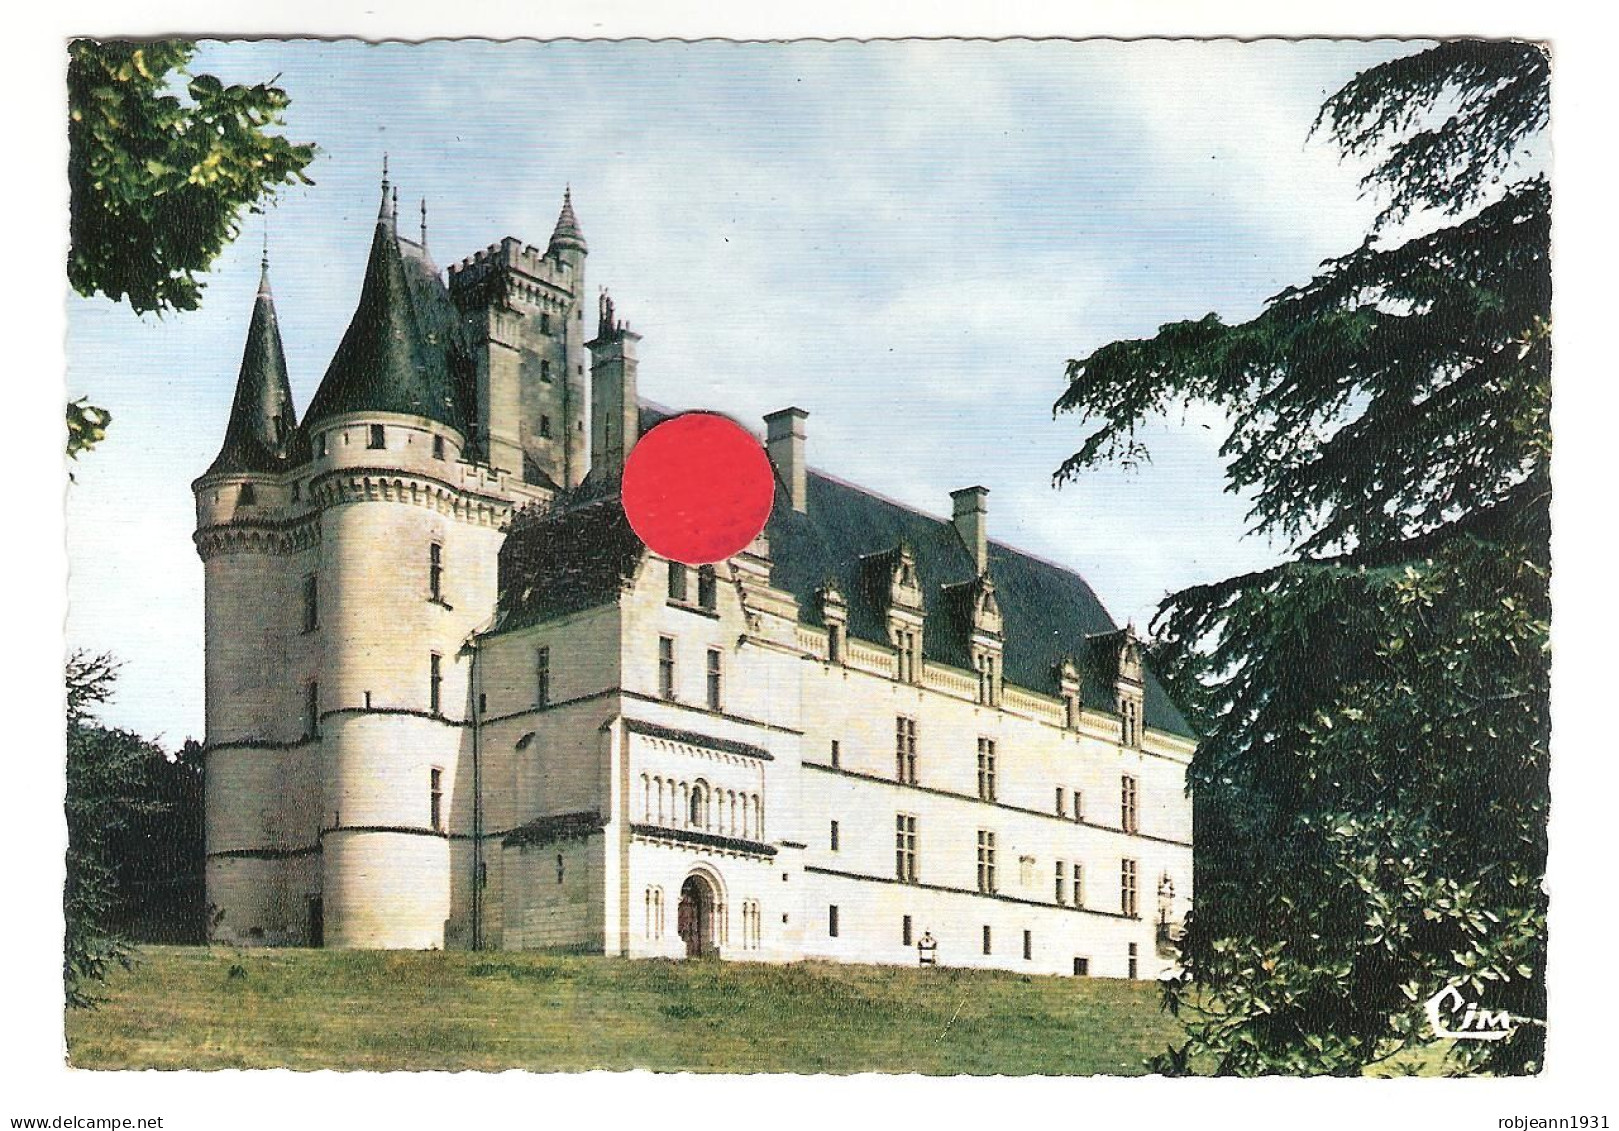 (86) Vouneuil-sur-vienne - Le Chateau Du Chitre - Vouneuil Sur Vienne